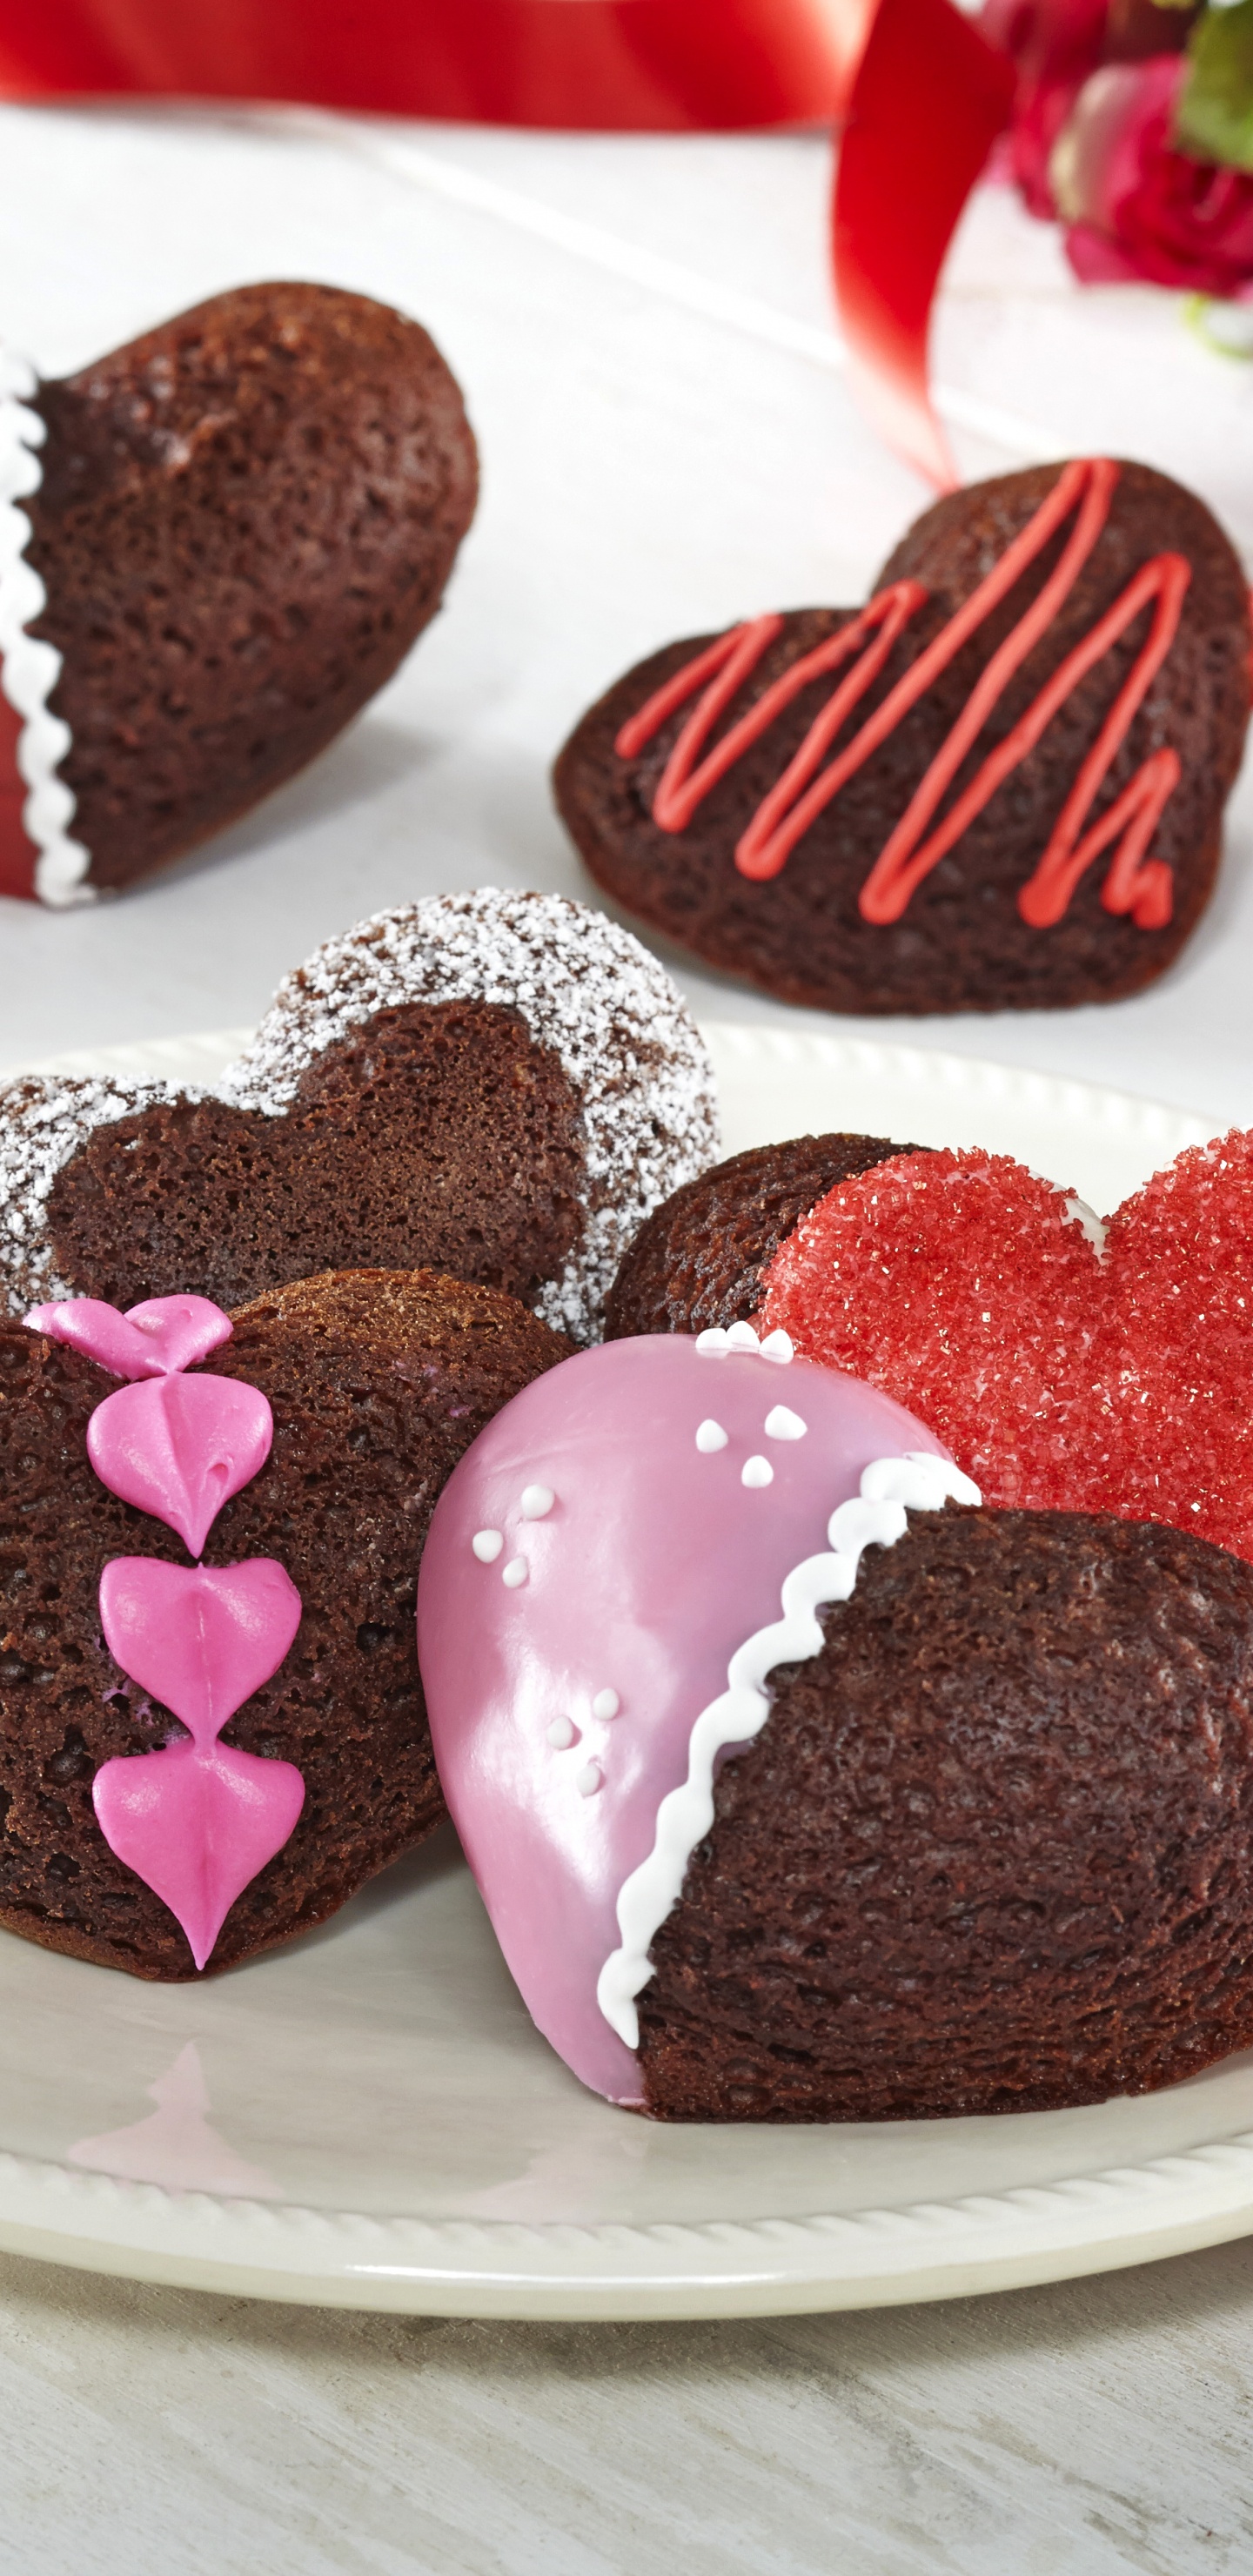 Schokoladenkuchen, Dessert, Valentines Tag, Schokolade, Lebensmittel. Wallpaper in 1440x2960 Resolution